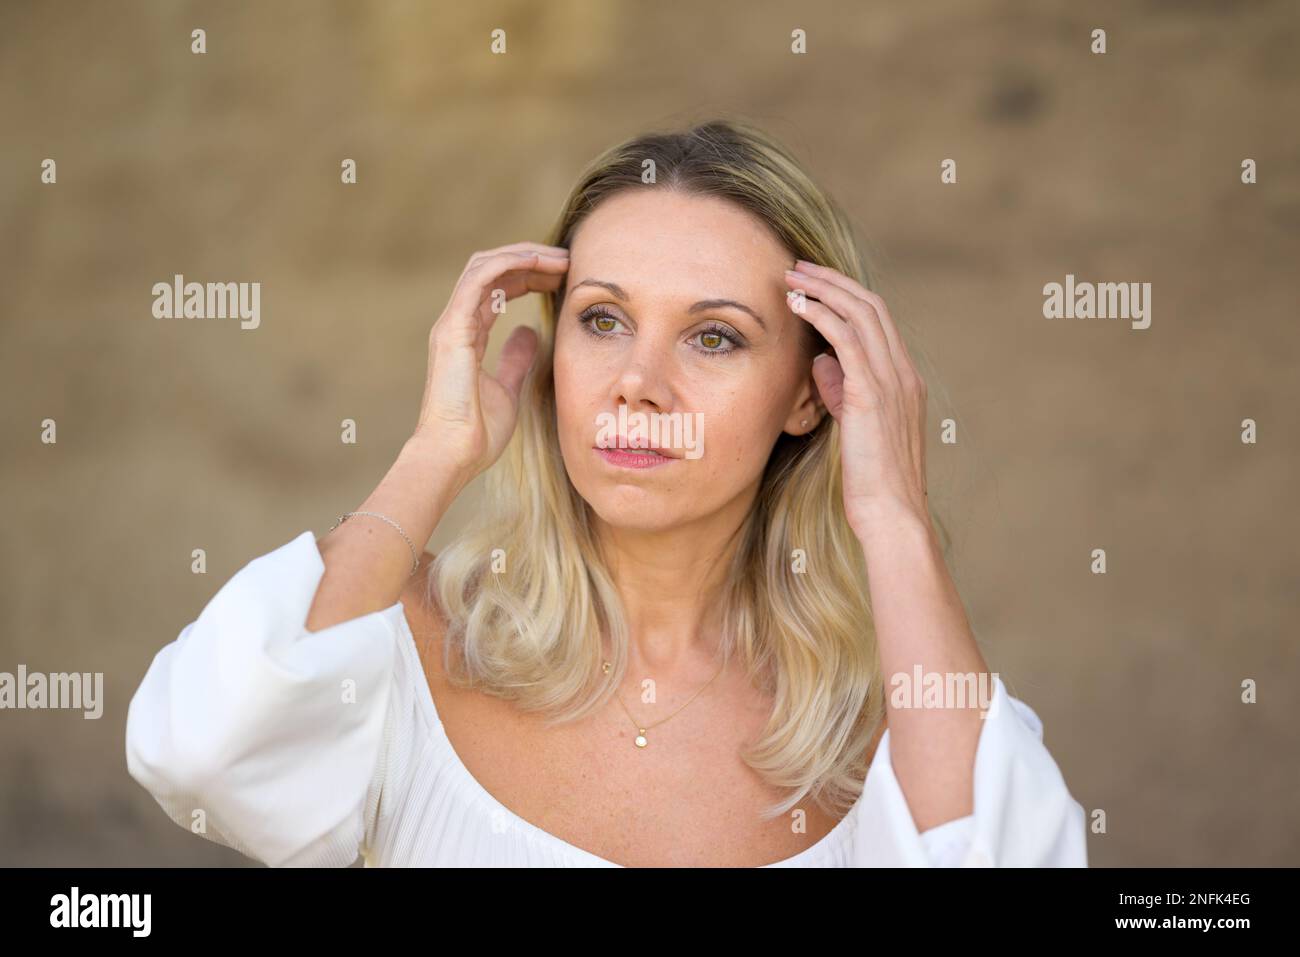 Il ritratto di una donna bionda di mezza età con una blusa bianca corre con entrambe le mani attraverso i capelli con un'espressione facciale premurosa davanti ad una fronte Foto Stock